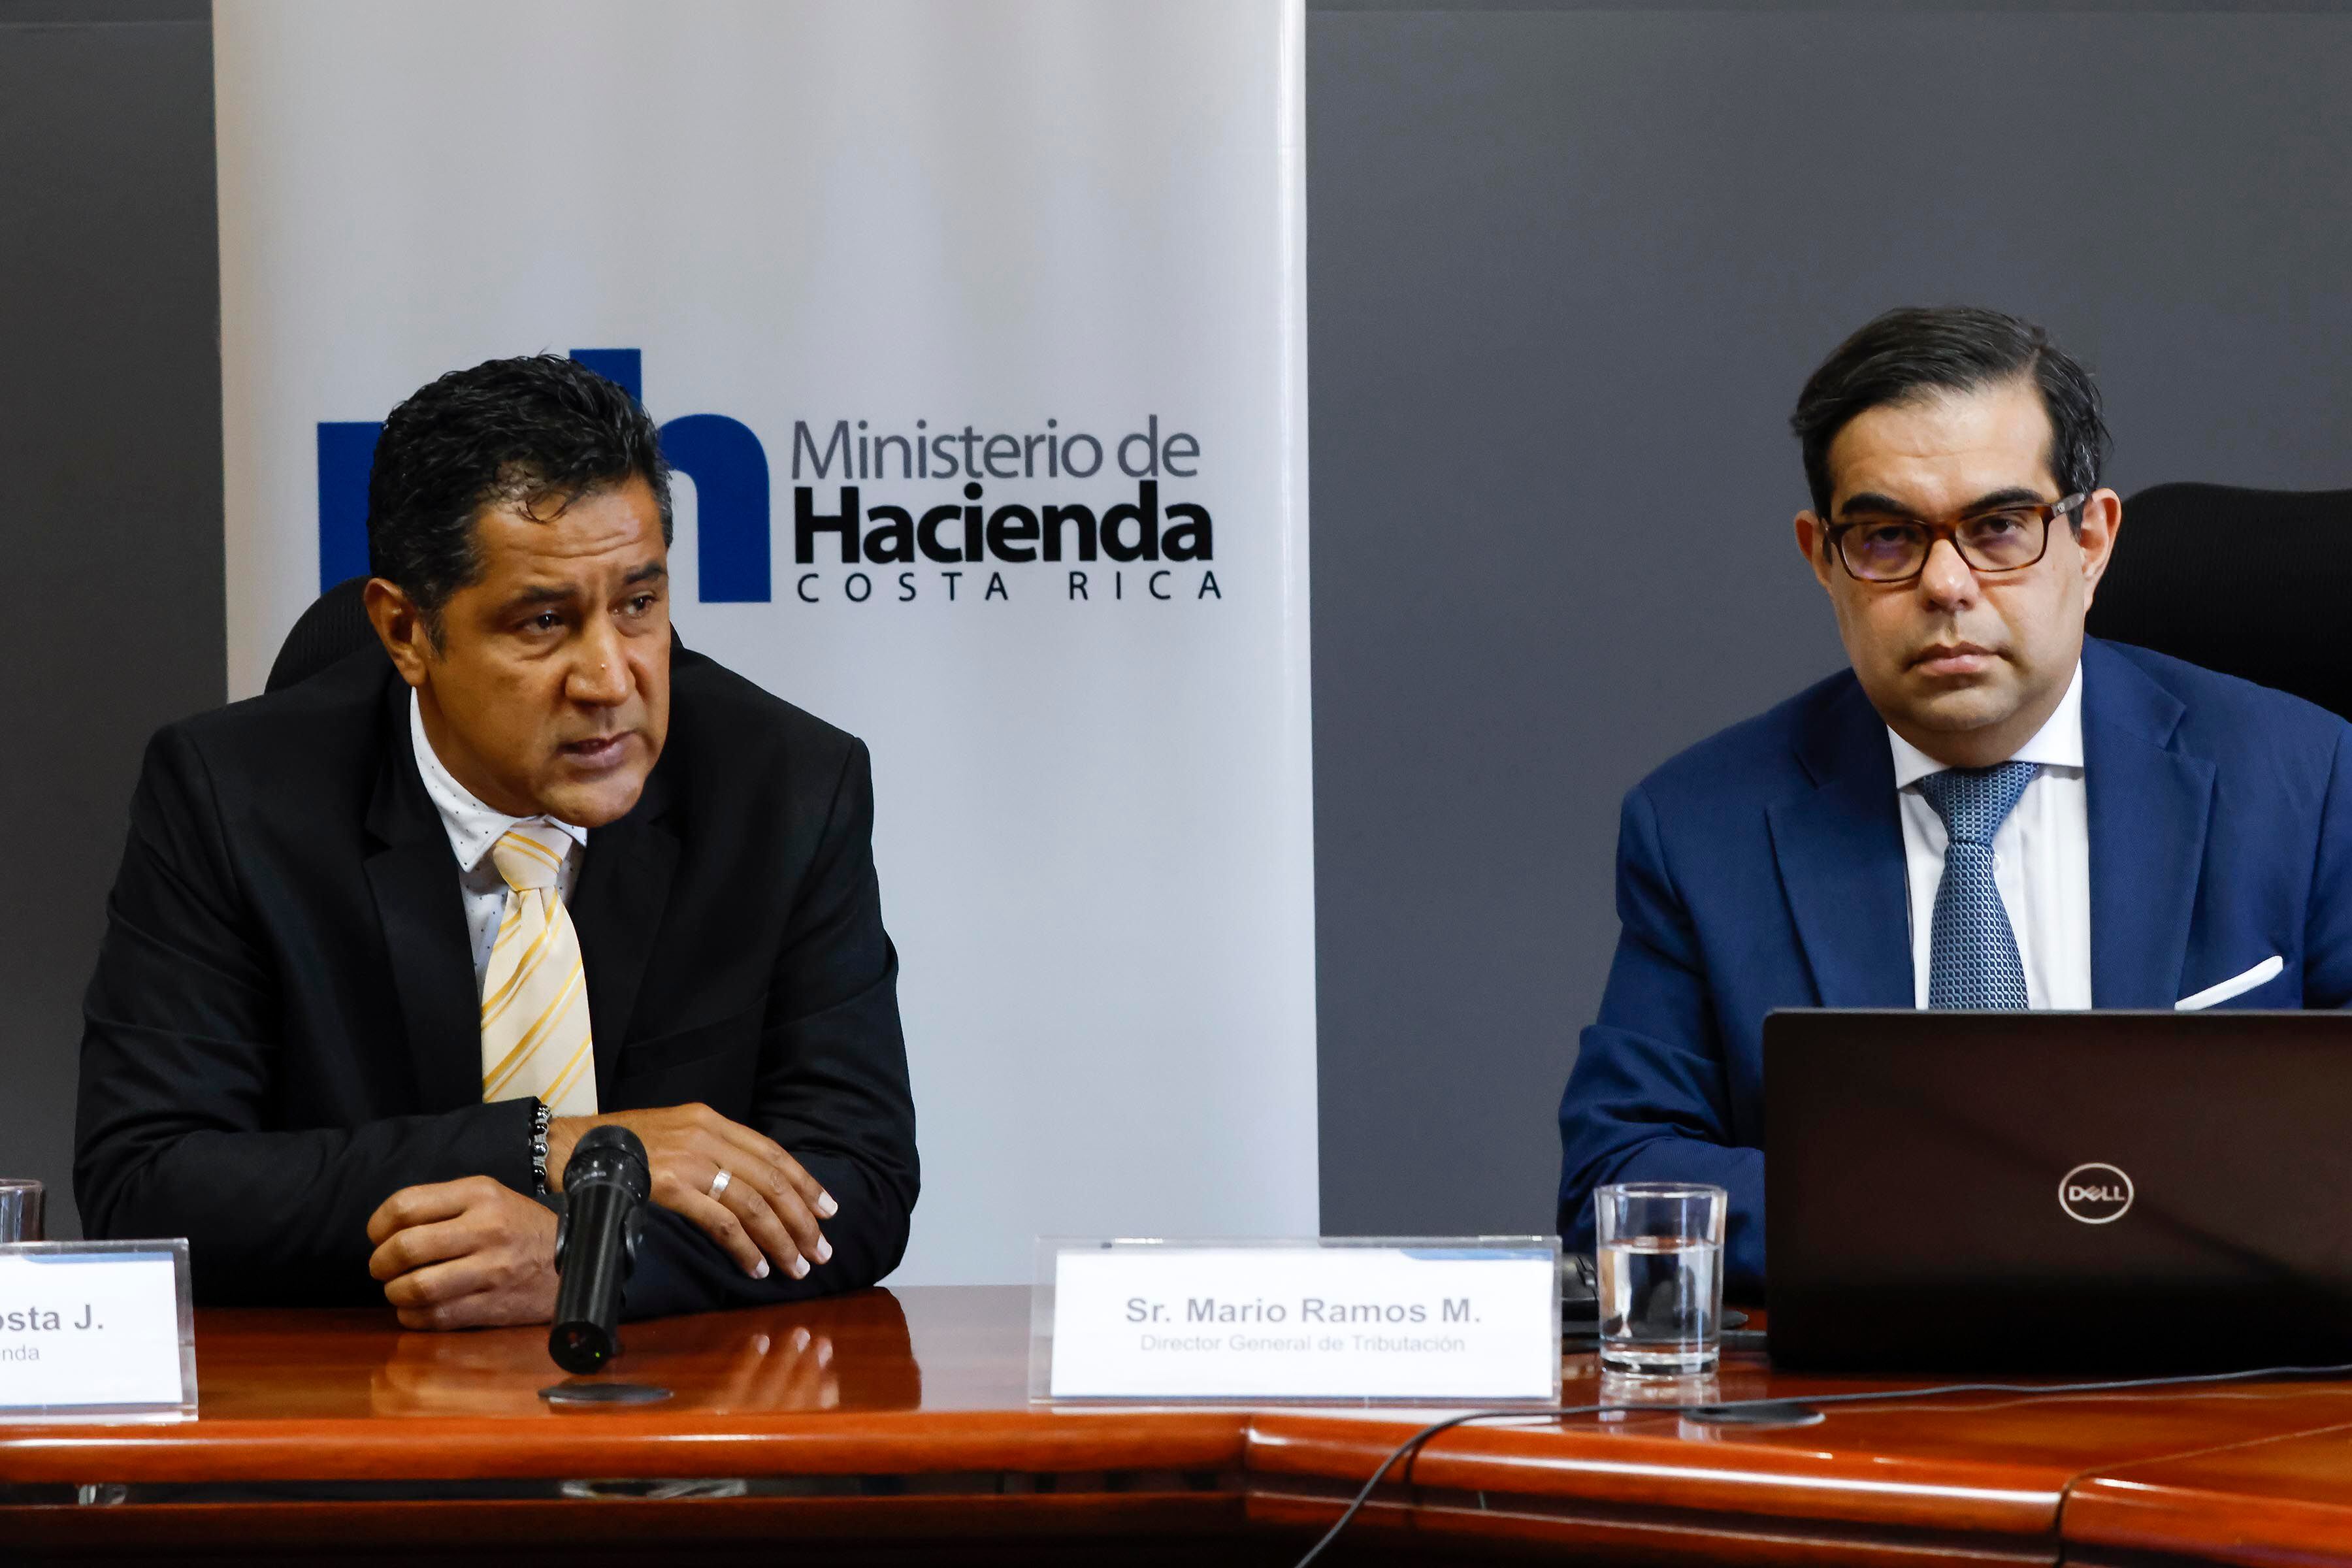 El ministro de Hacienda, Nogui Acosta, rechazó revelar detalles de su conversación con Mario Ramos, director de Tributación. Foto: 